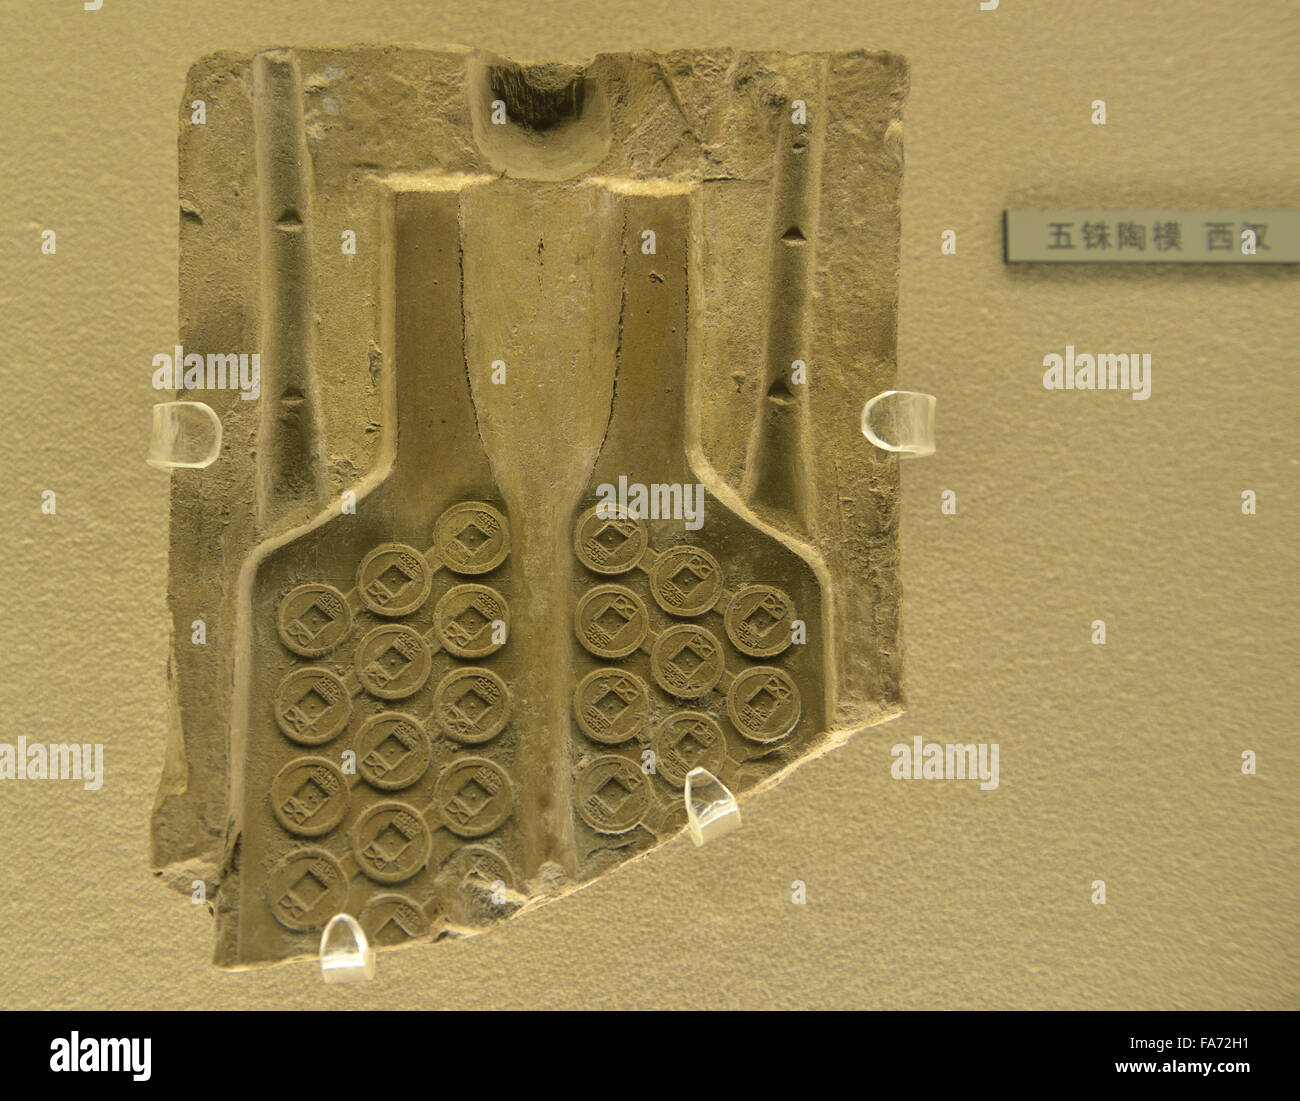 Fundición de monedas antiguas de China. Museo de Shanghai Foto de stock